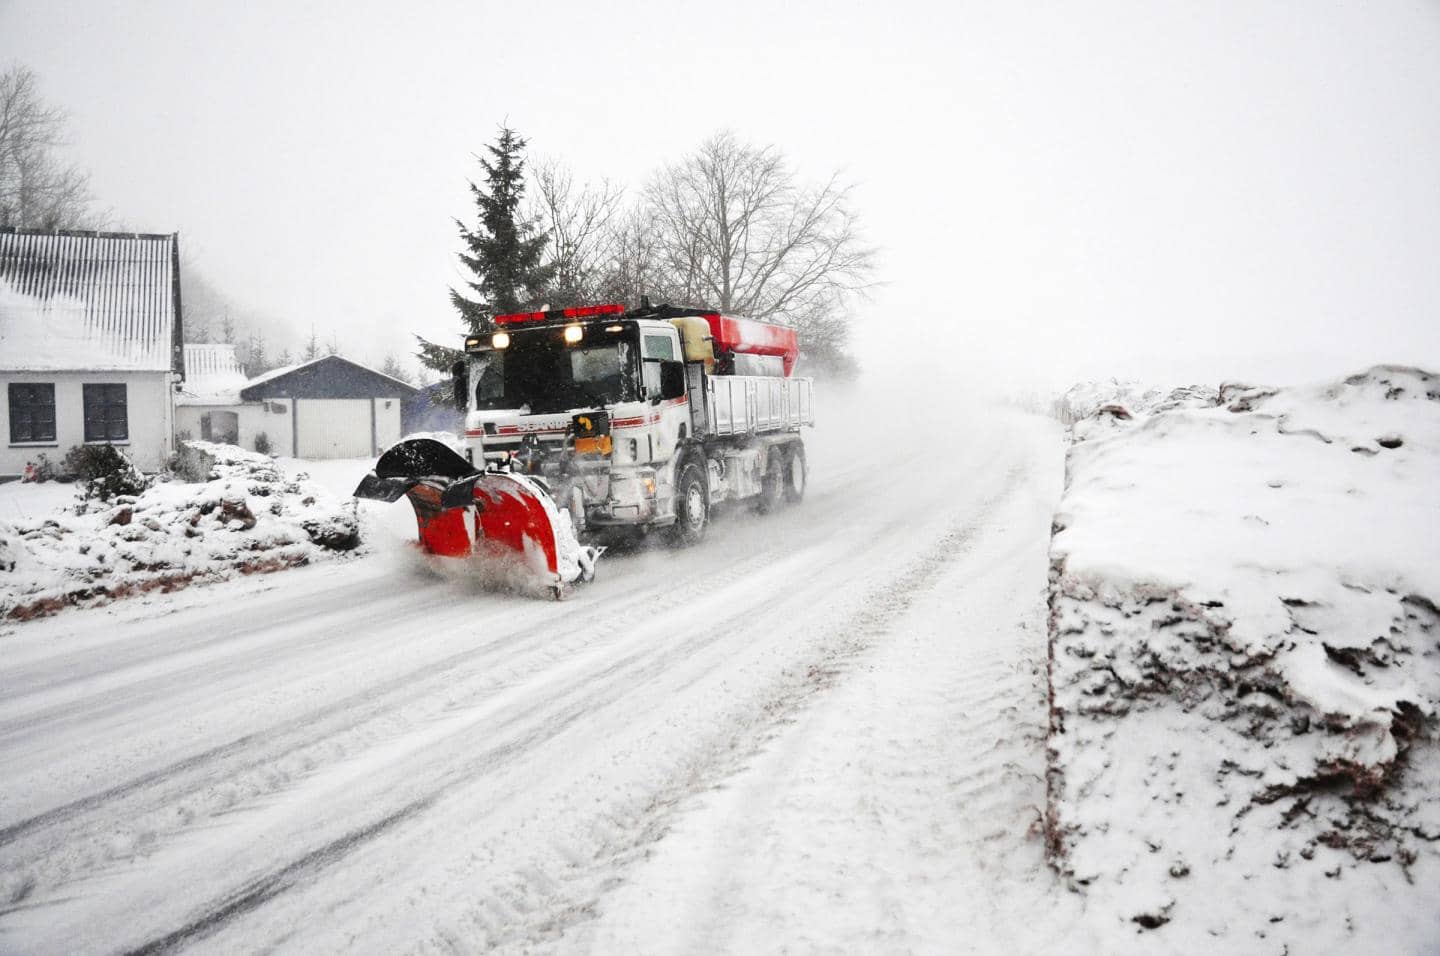 Forbyg vejrskader, traktor kører på vej i ekstremt snevejr